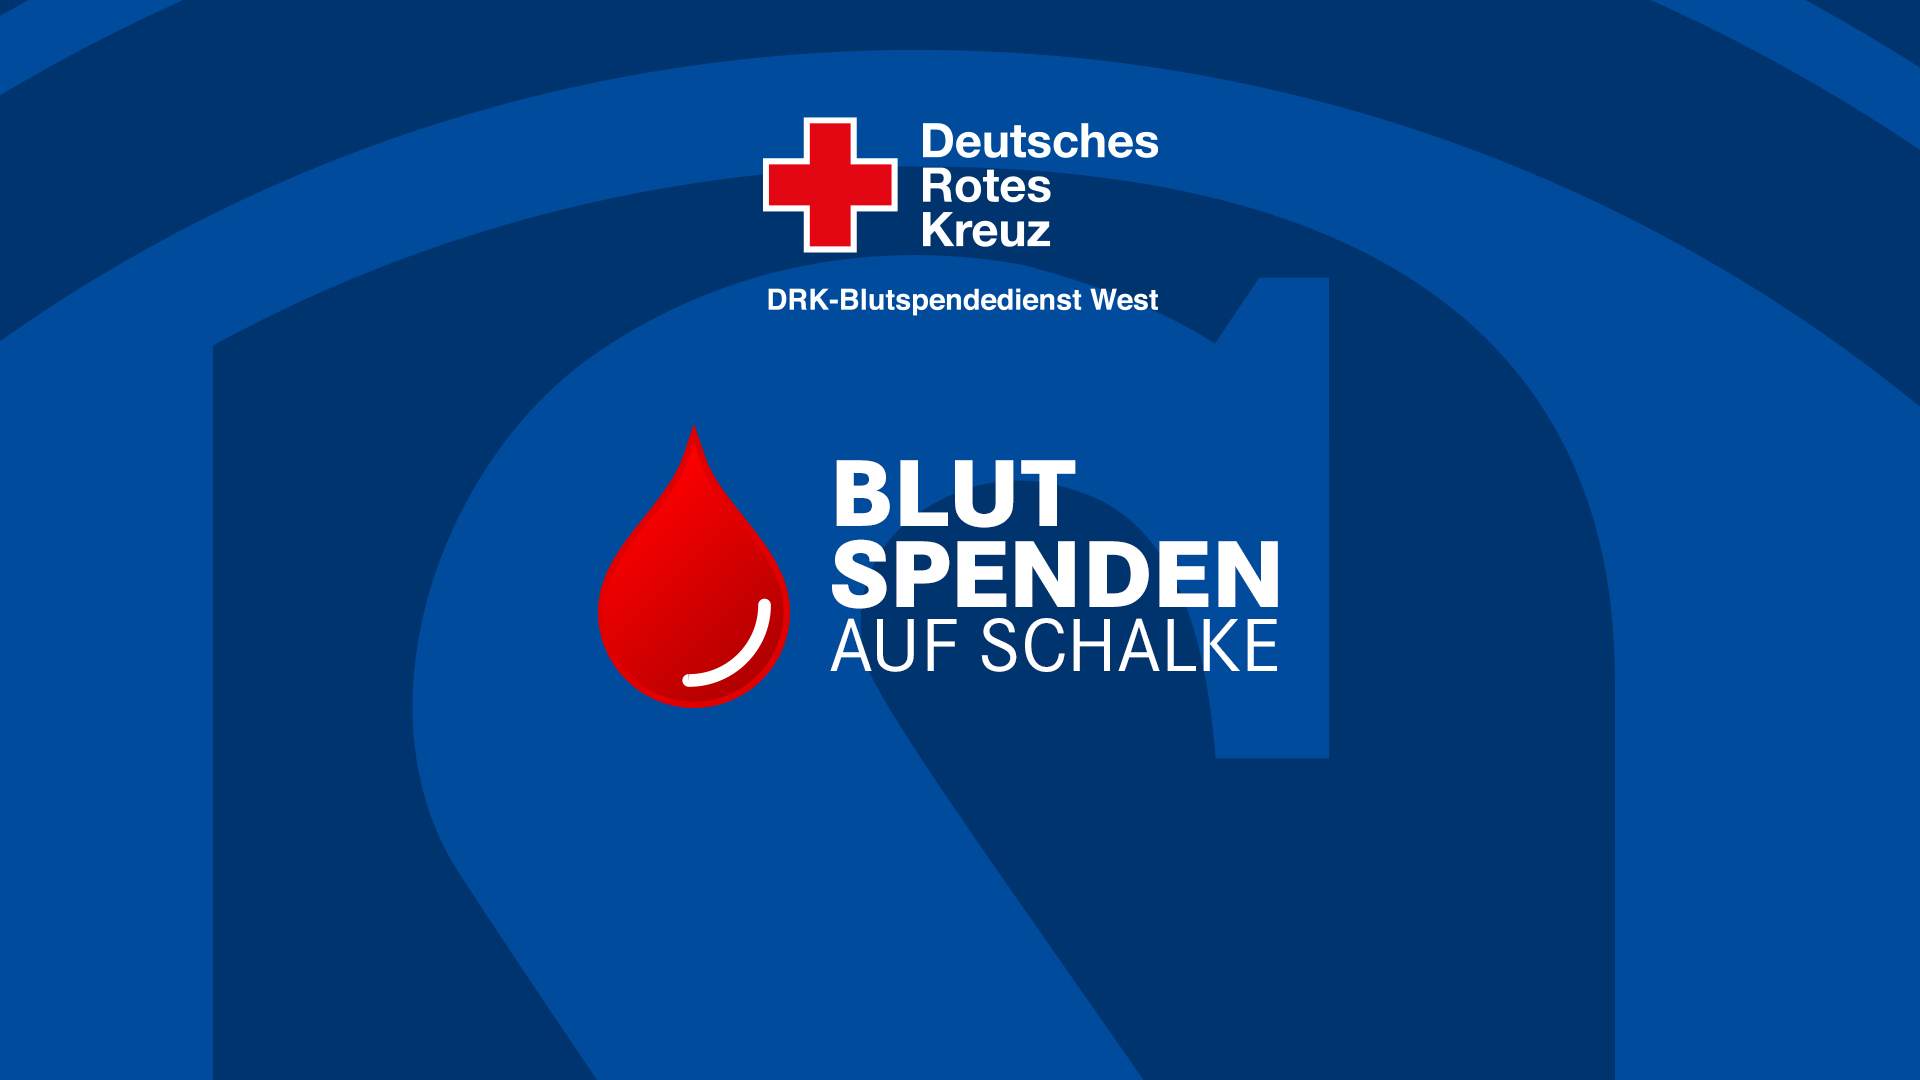 Blut spenden auf Schalke